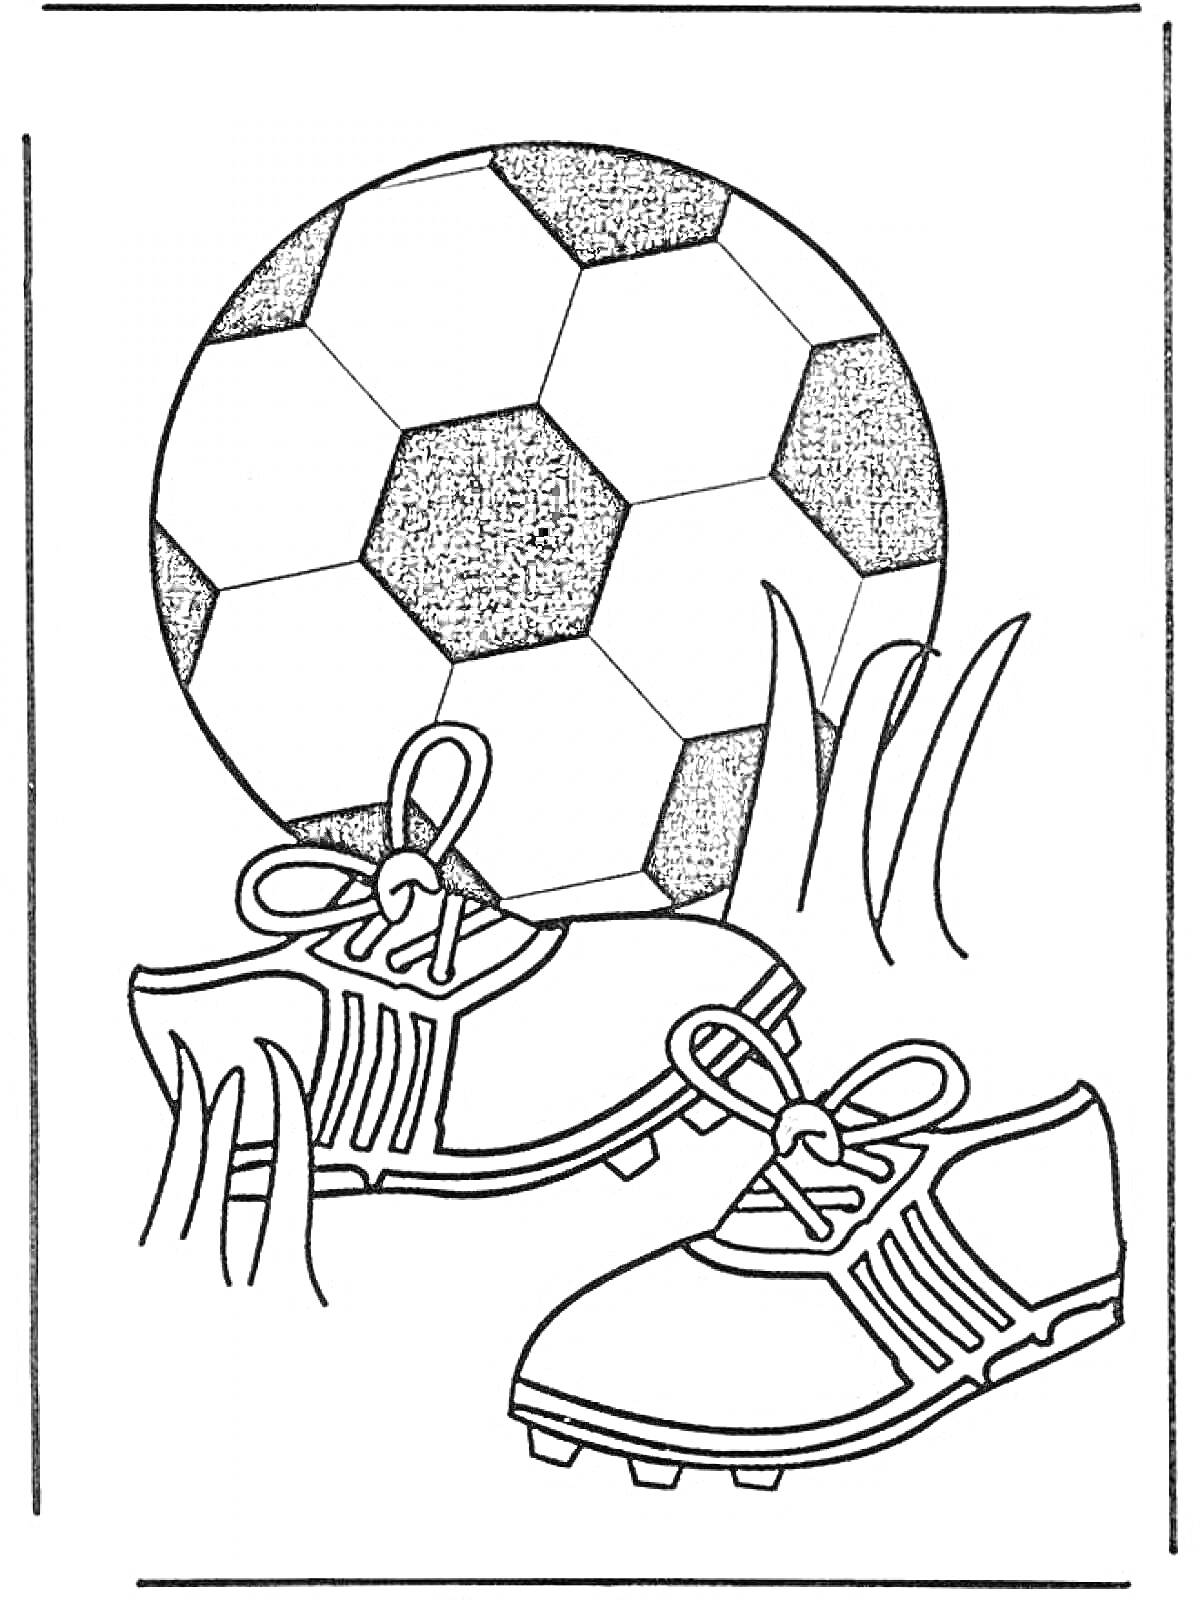 Футбольный мяч и бутсы на траве